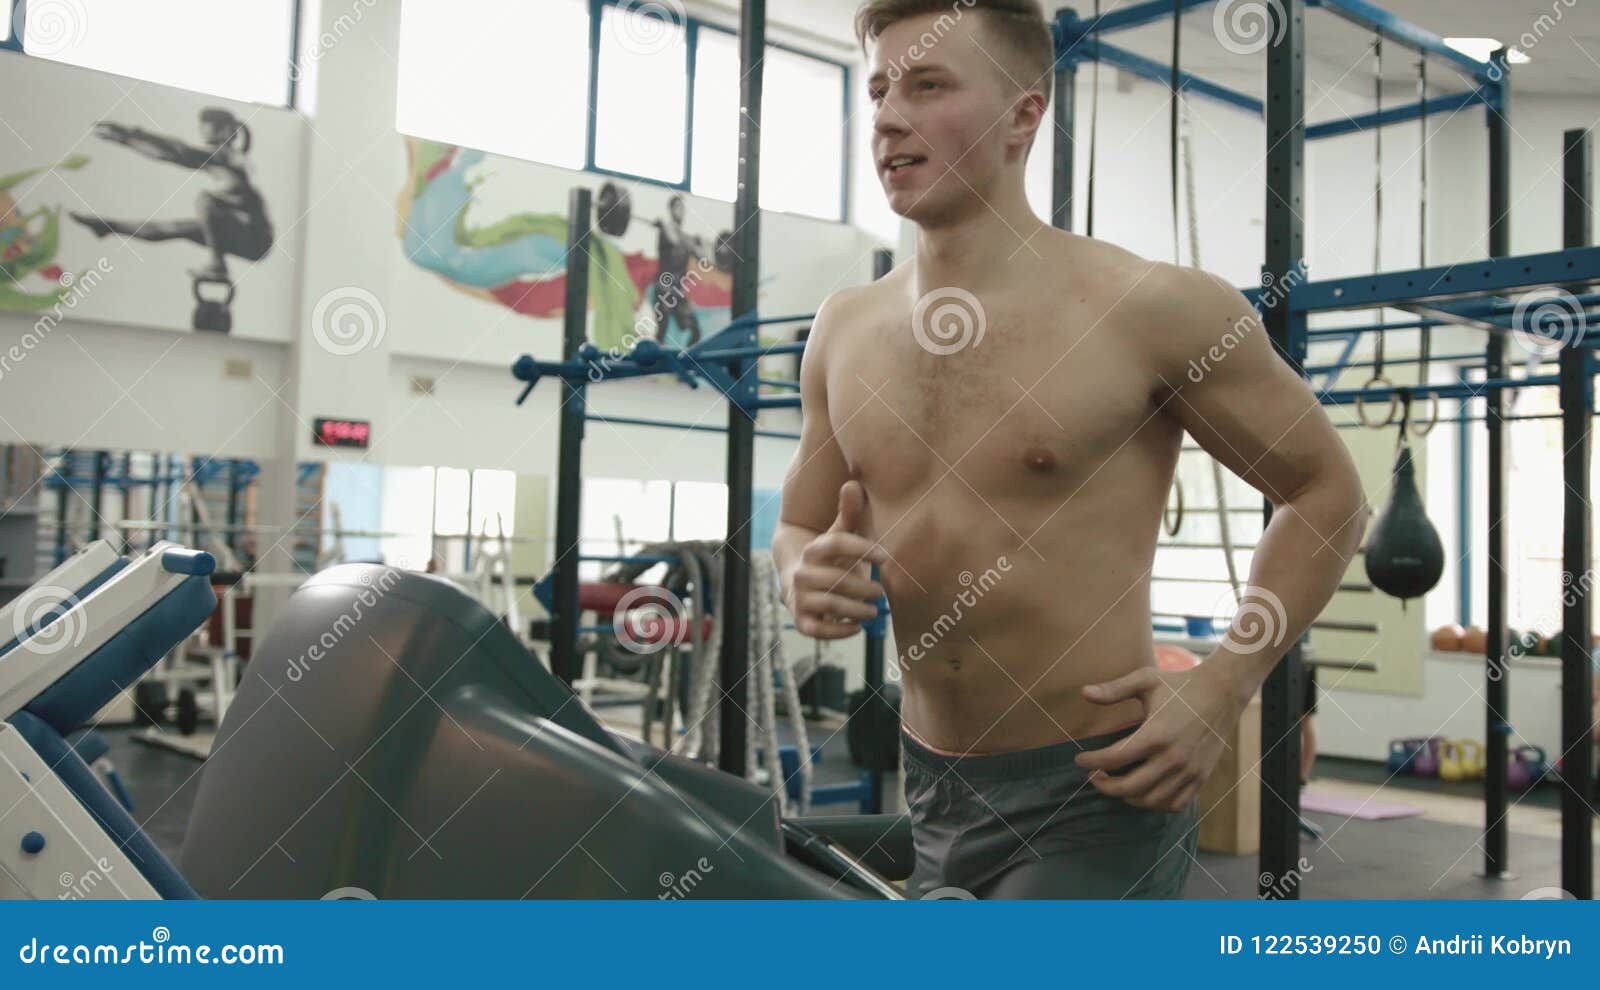 Naked treadmill